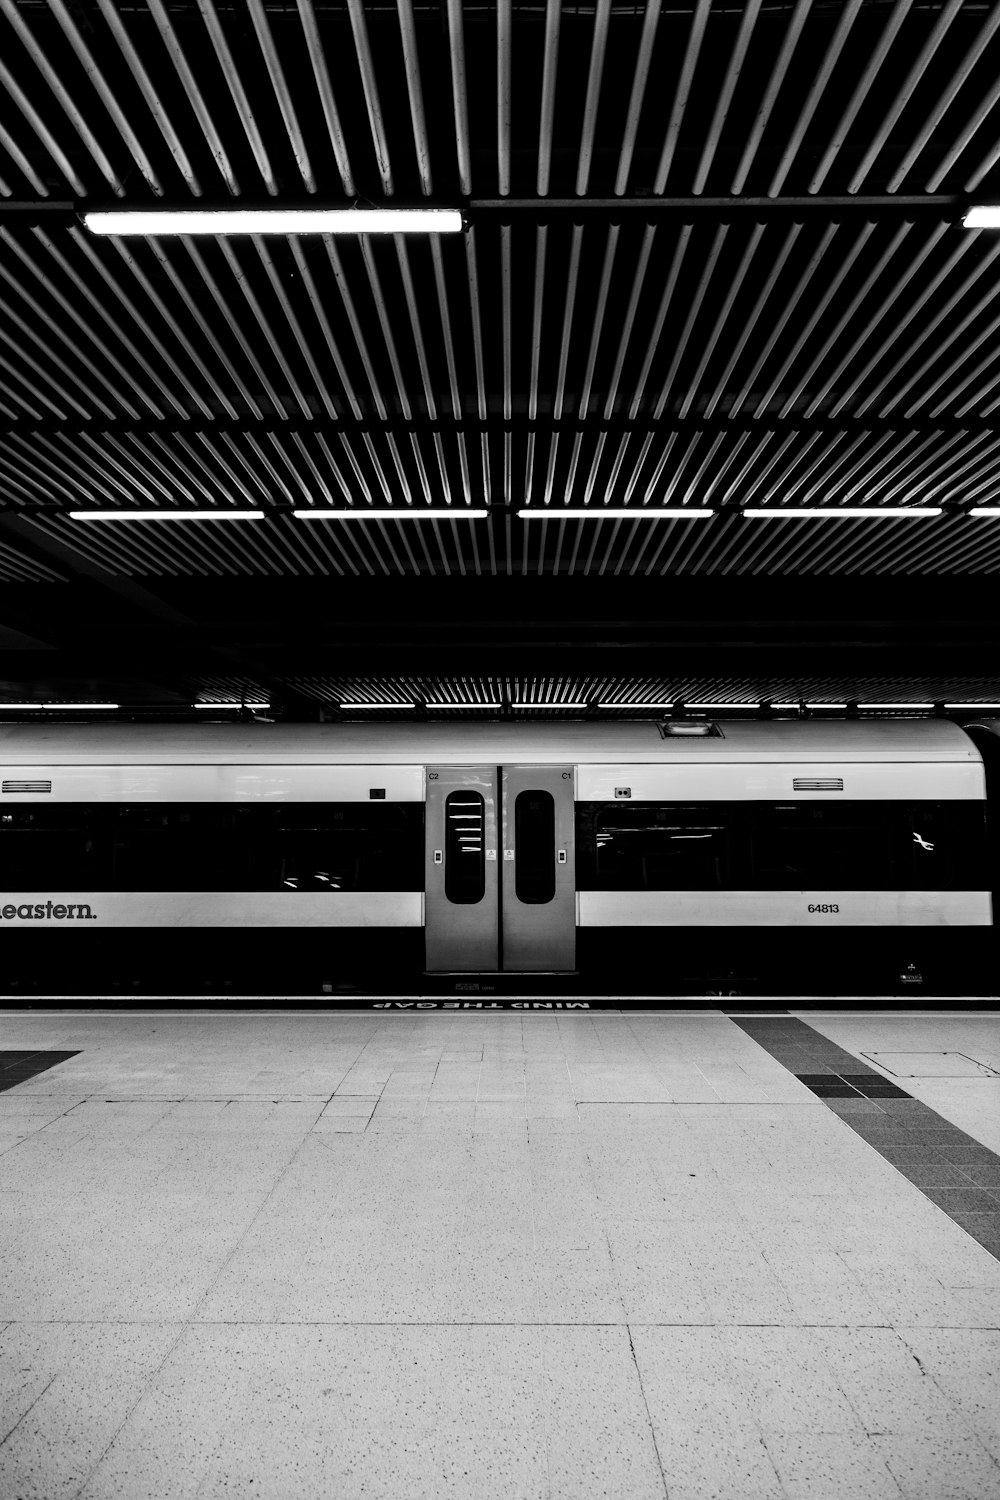 white and black striped train